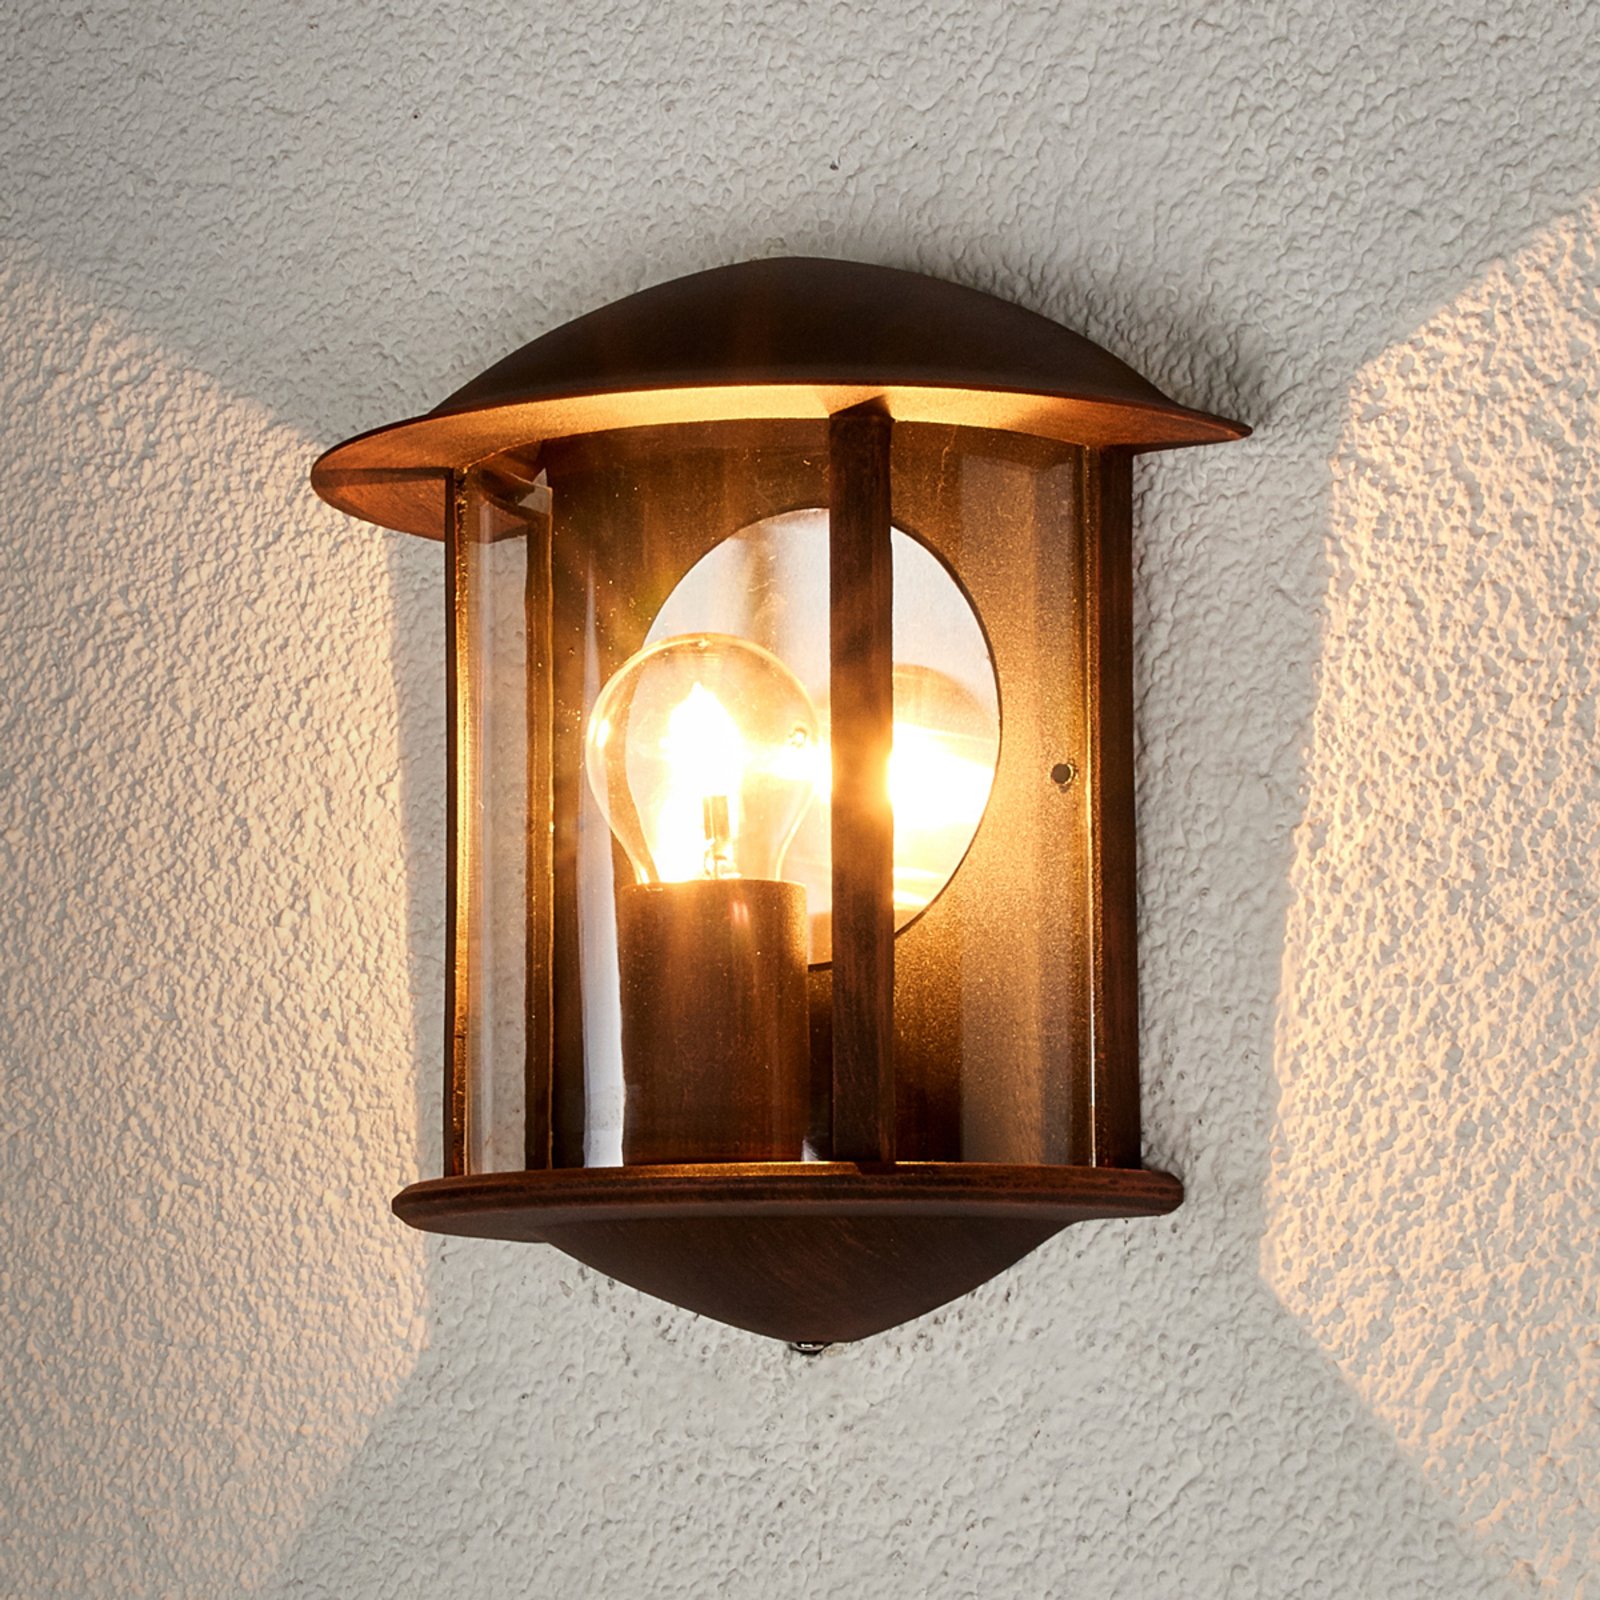 Rdzawa zewnętrzna lampa LED ścienna Maelis 